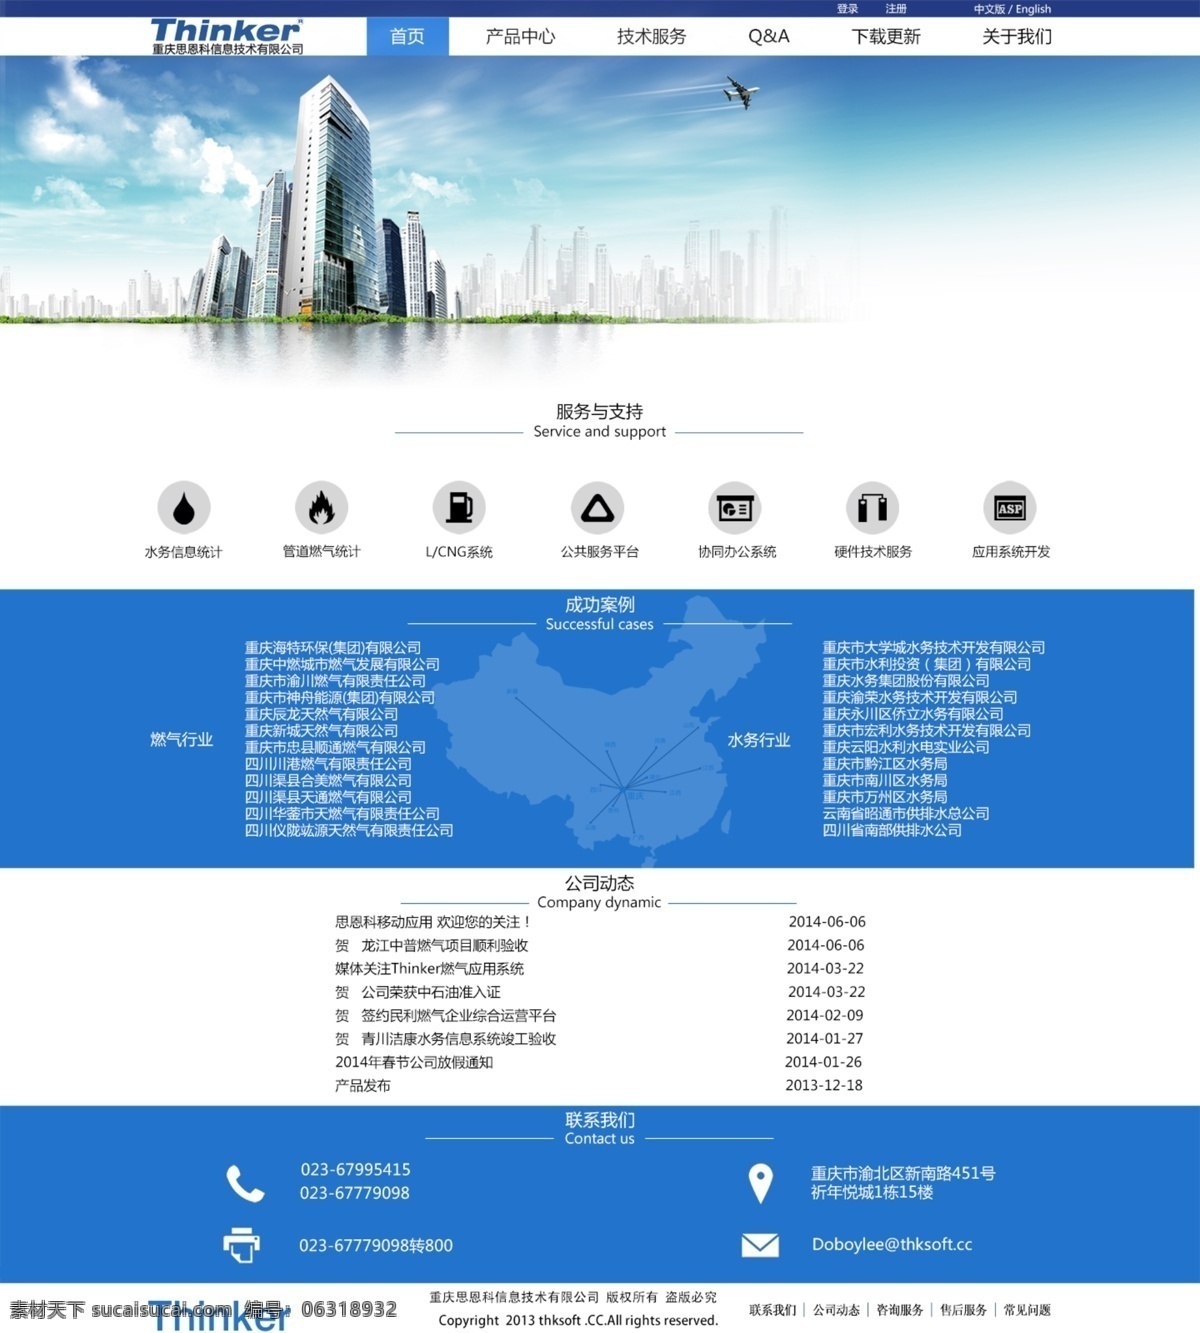 企业 公司 网站 模板 公司网站 企业网站 网页设计 网站模板 网站设计 中文模板 企业公司网站 web 界面设计 网页素材 其他网页素材